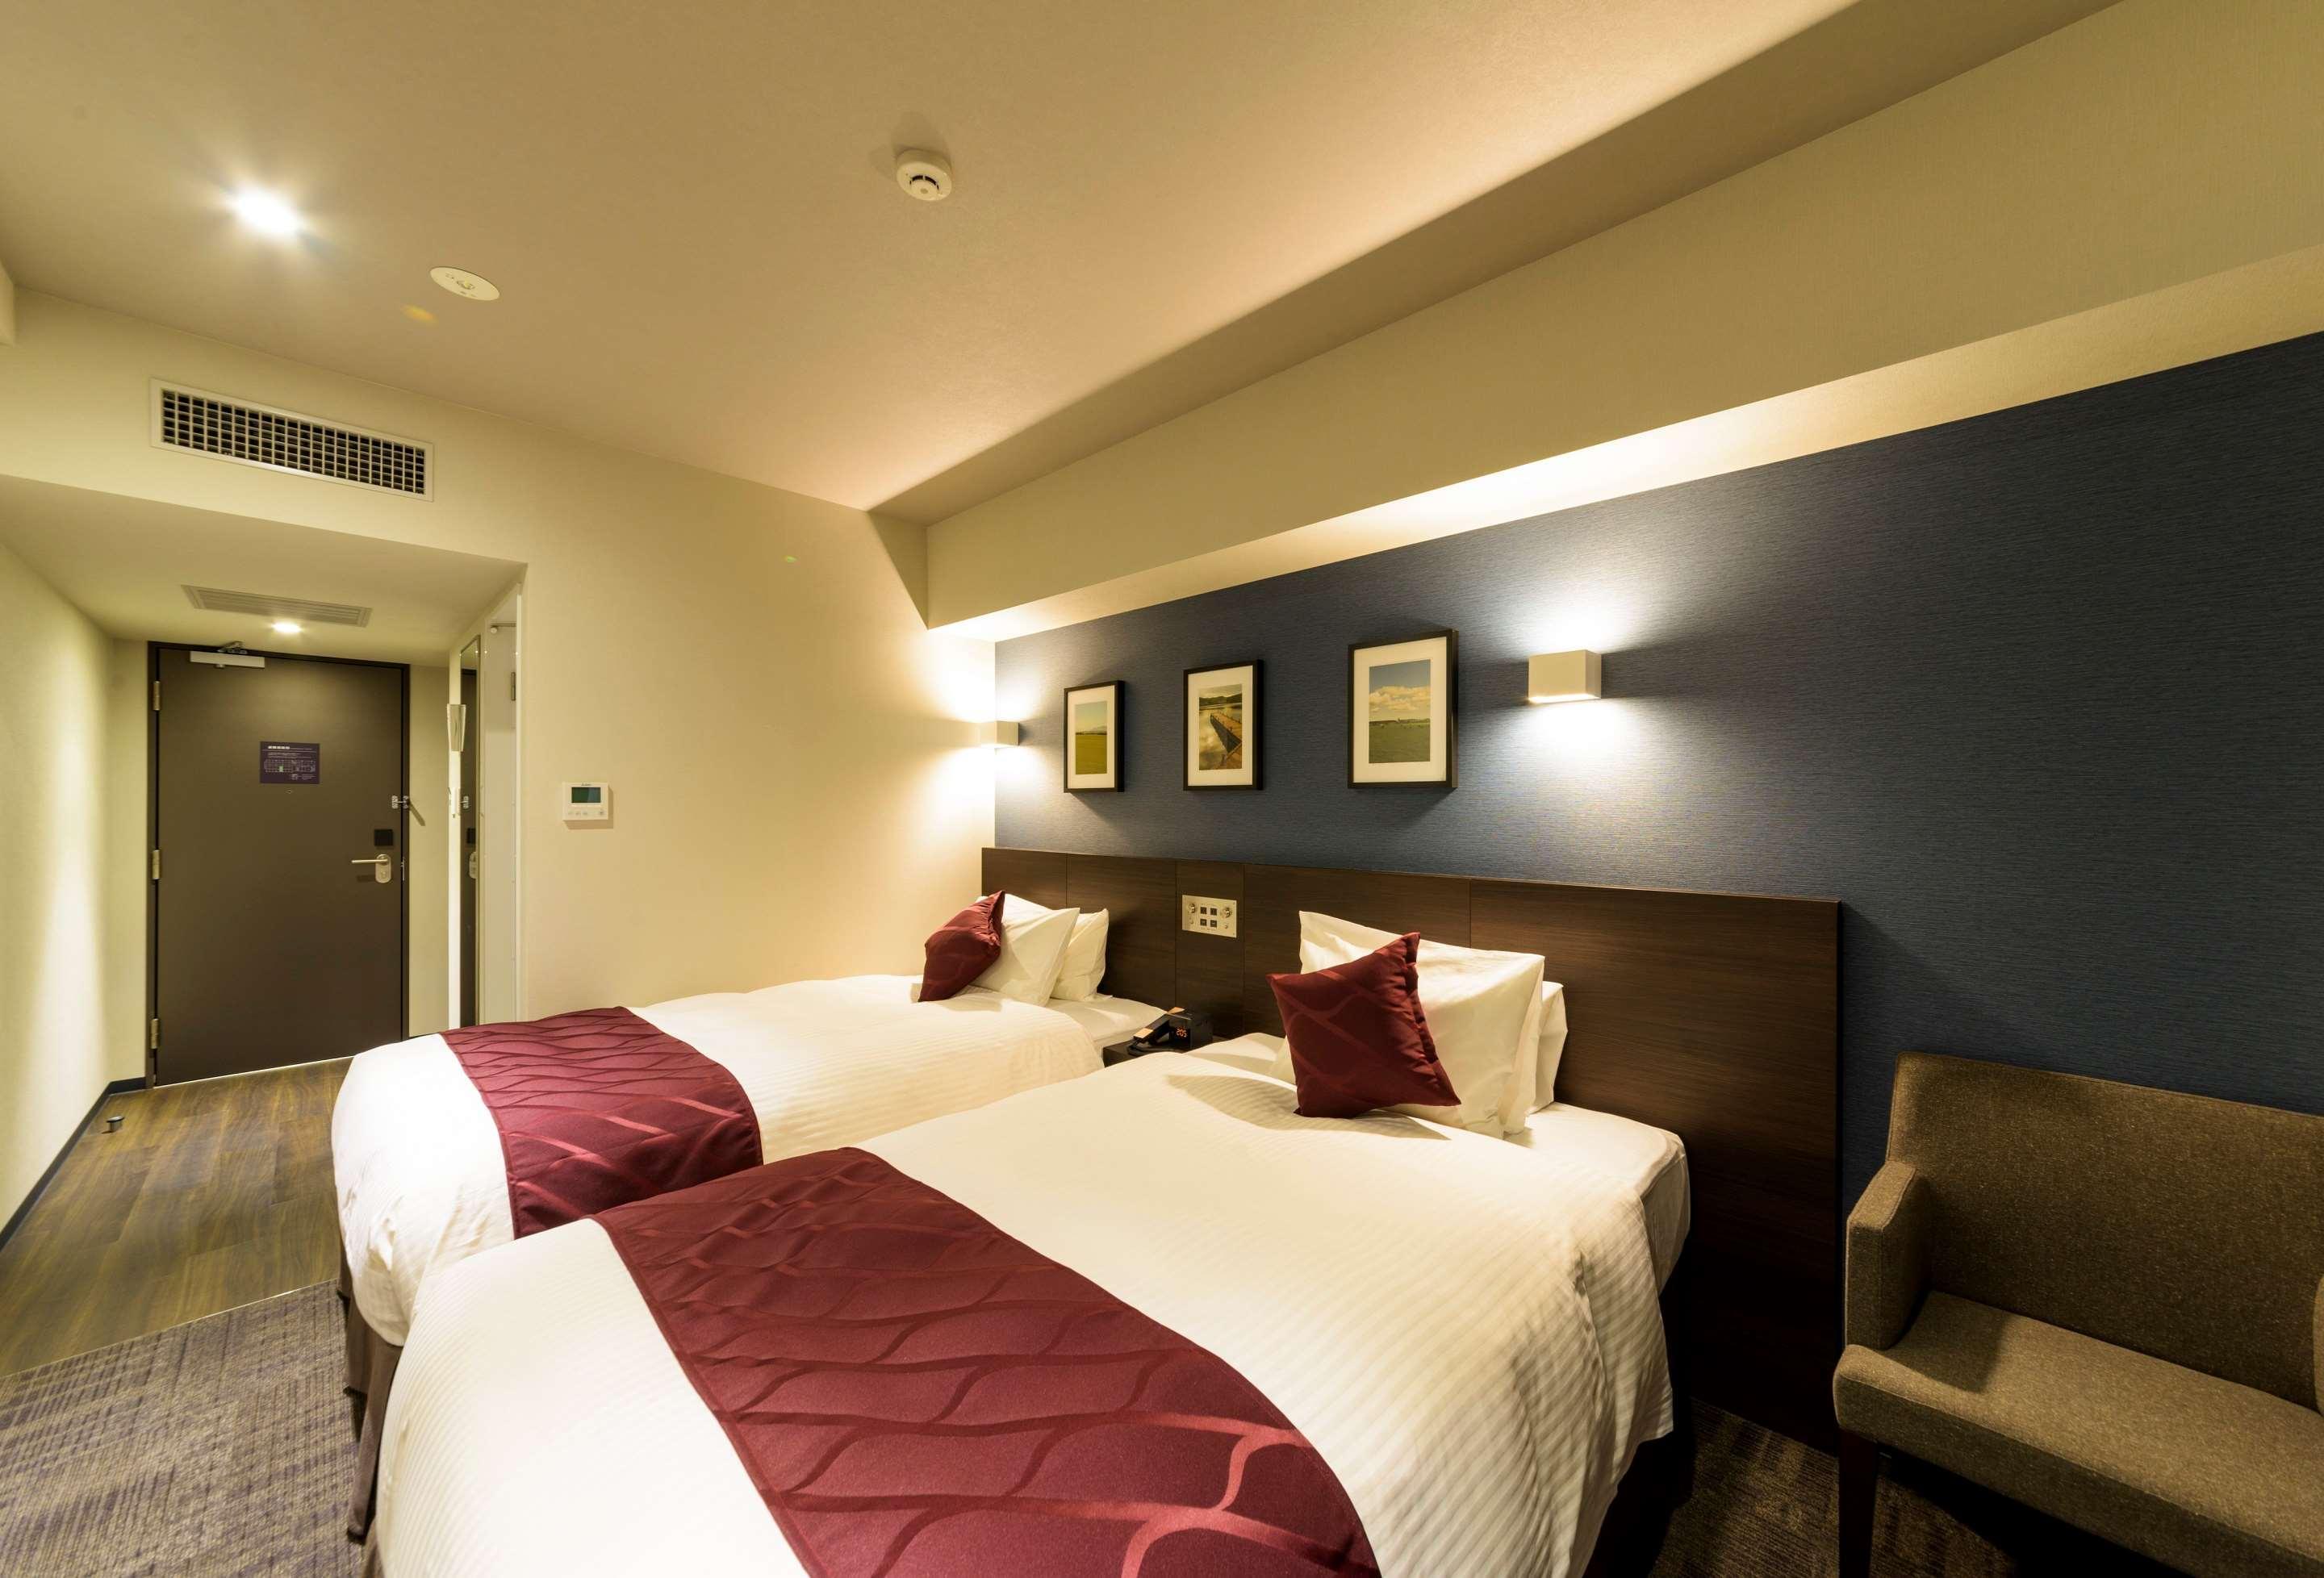 צ'יטוסה Best Western Plus Hotel Fino Chitose מראה חיצוני תמונה